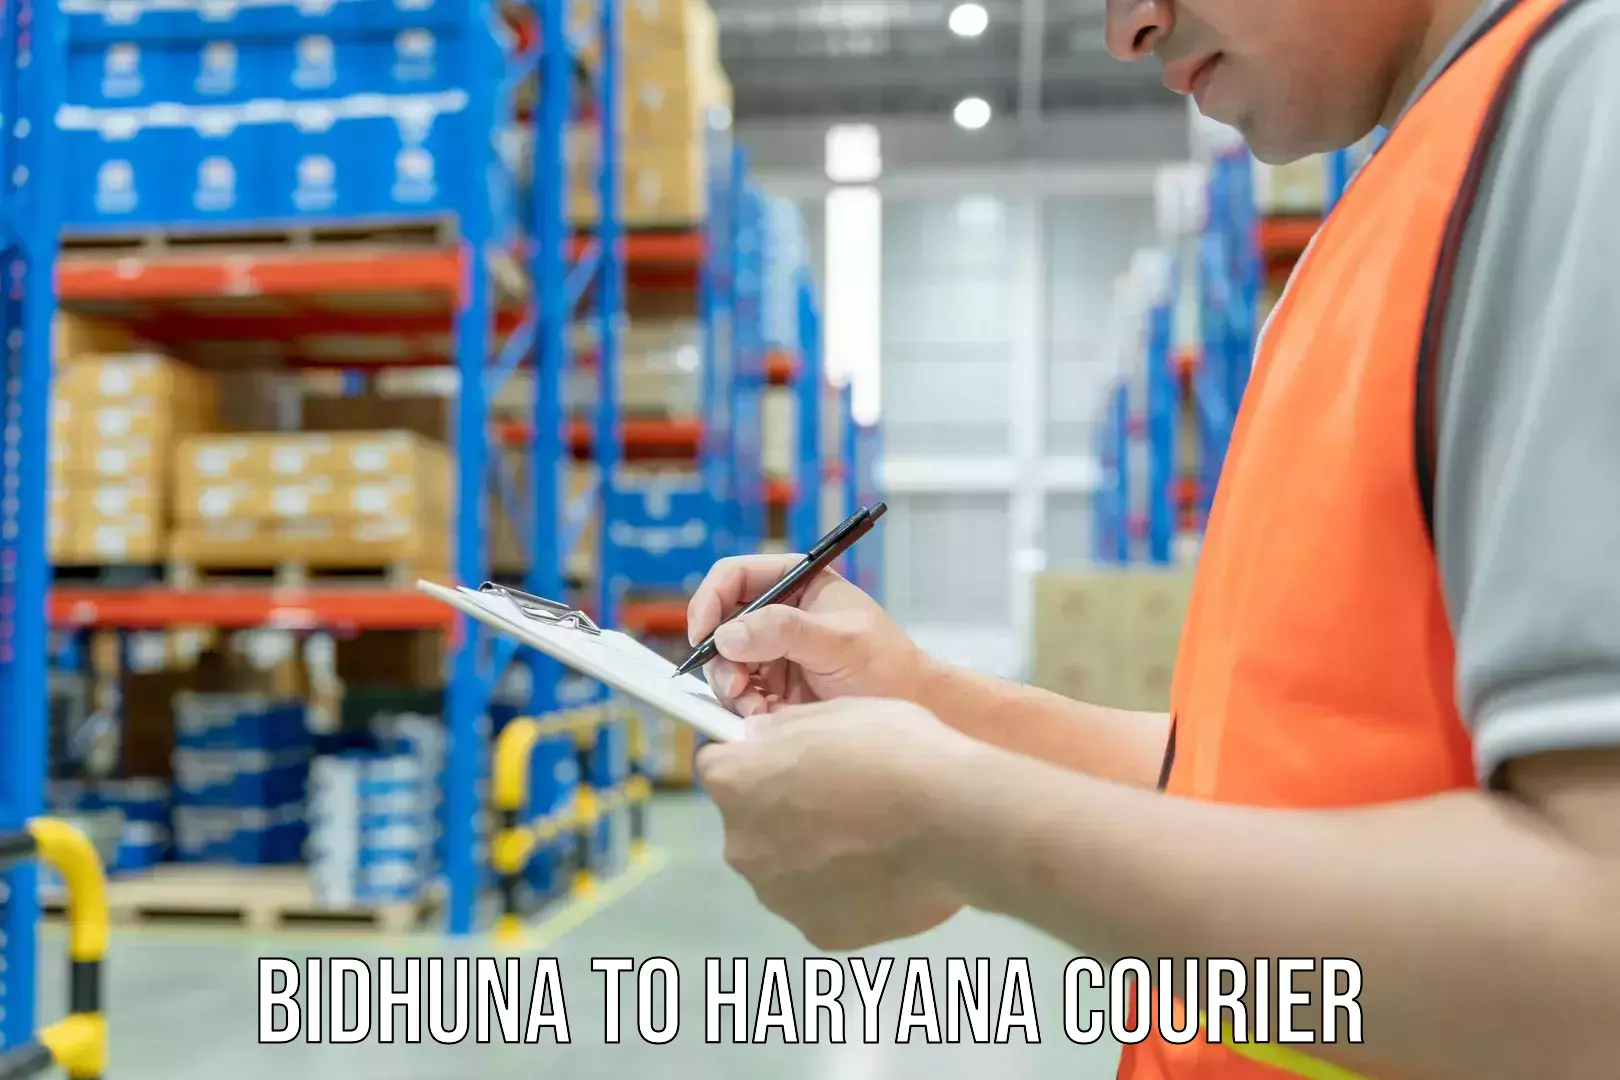 Multi-city courier Bidhuna to Haryana